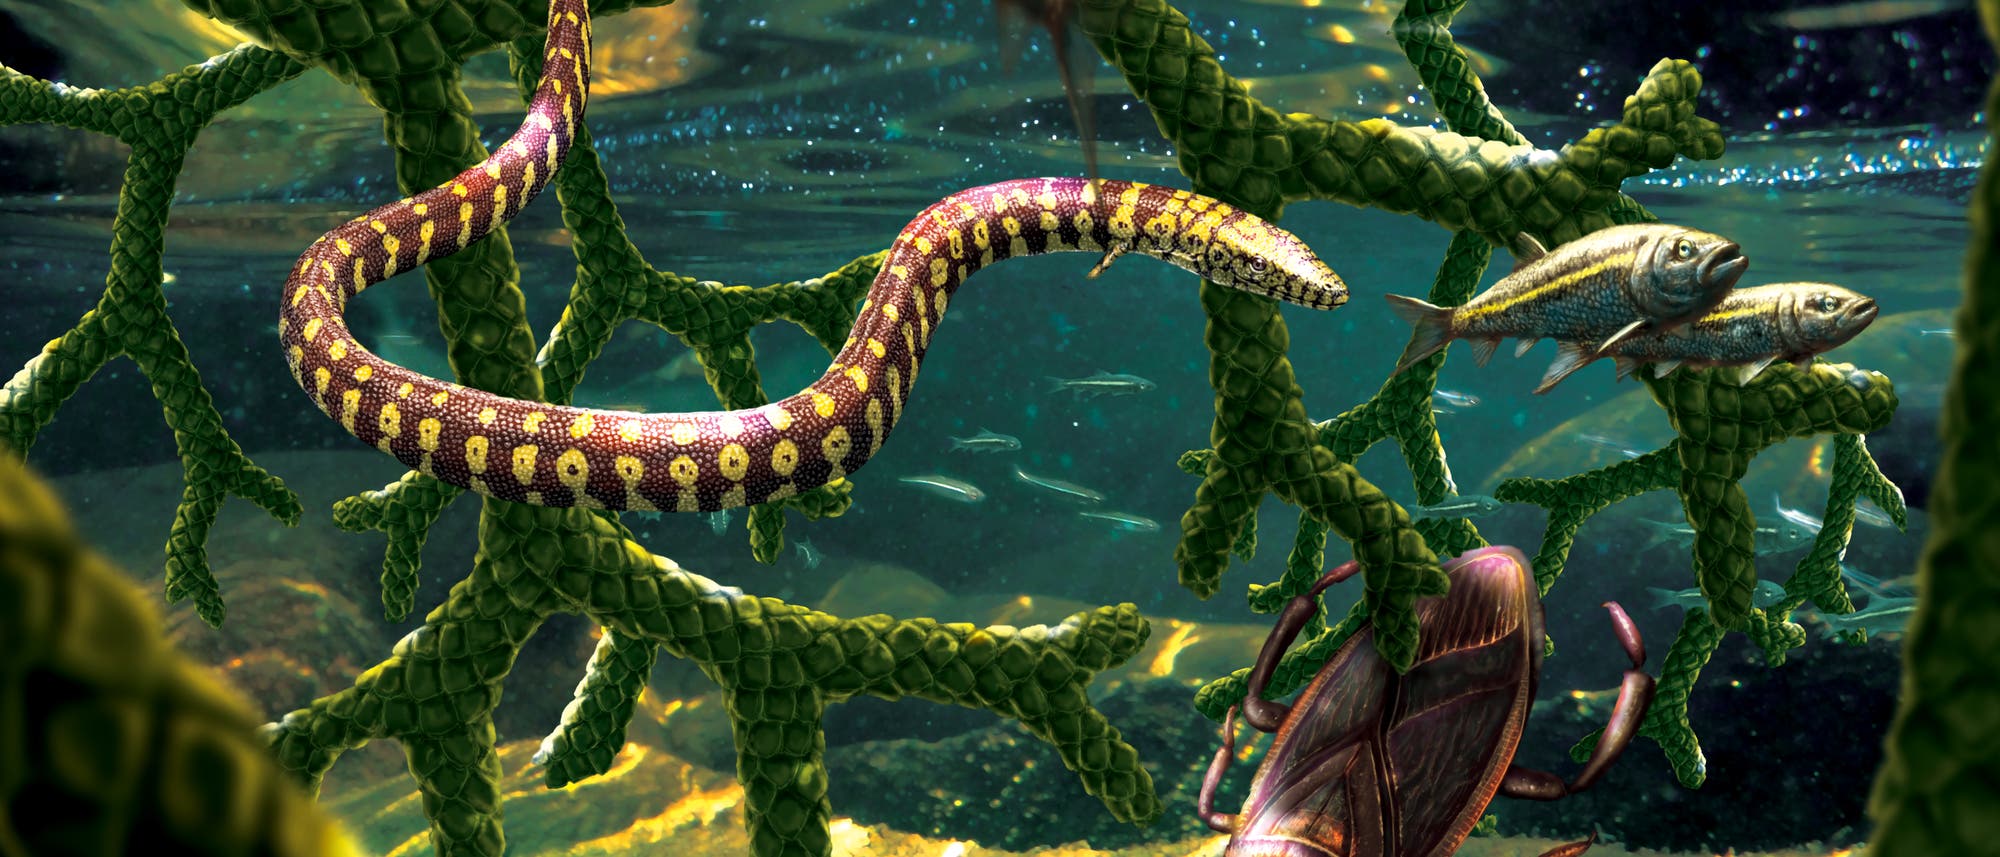 Die nur vermeintliche Urschlange lebte womöglich unter Wasser